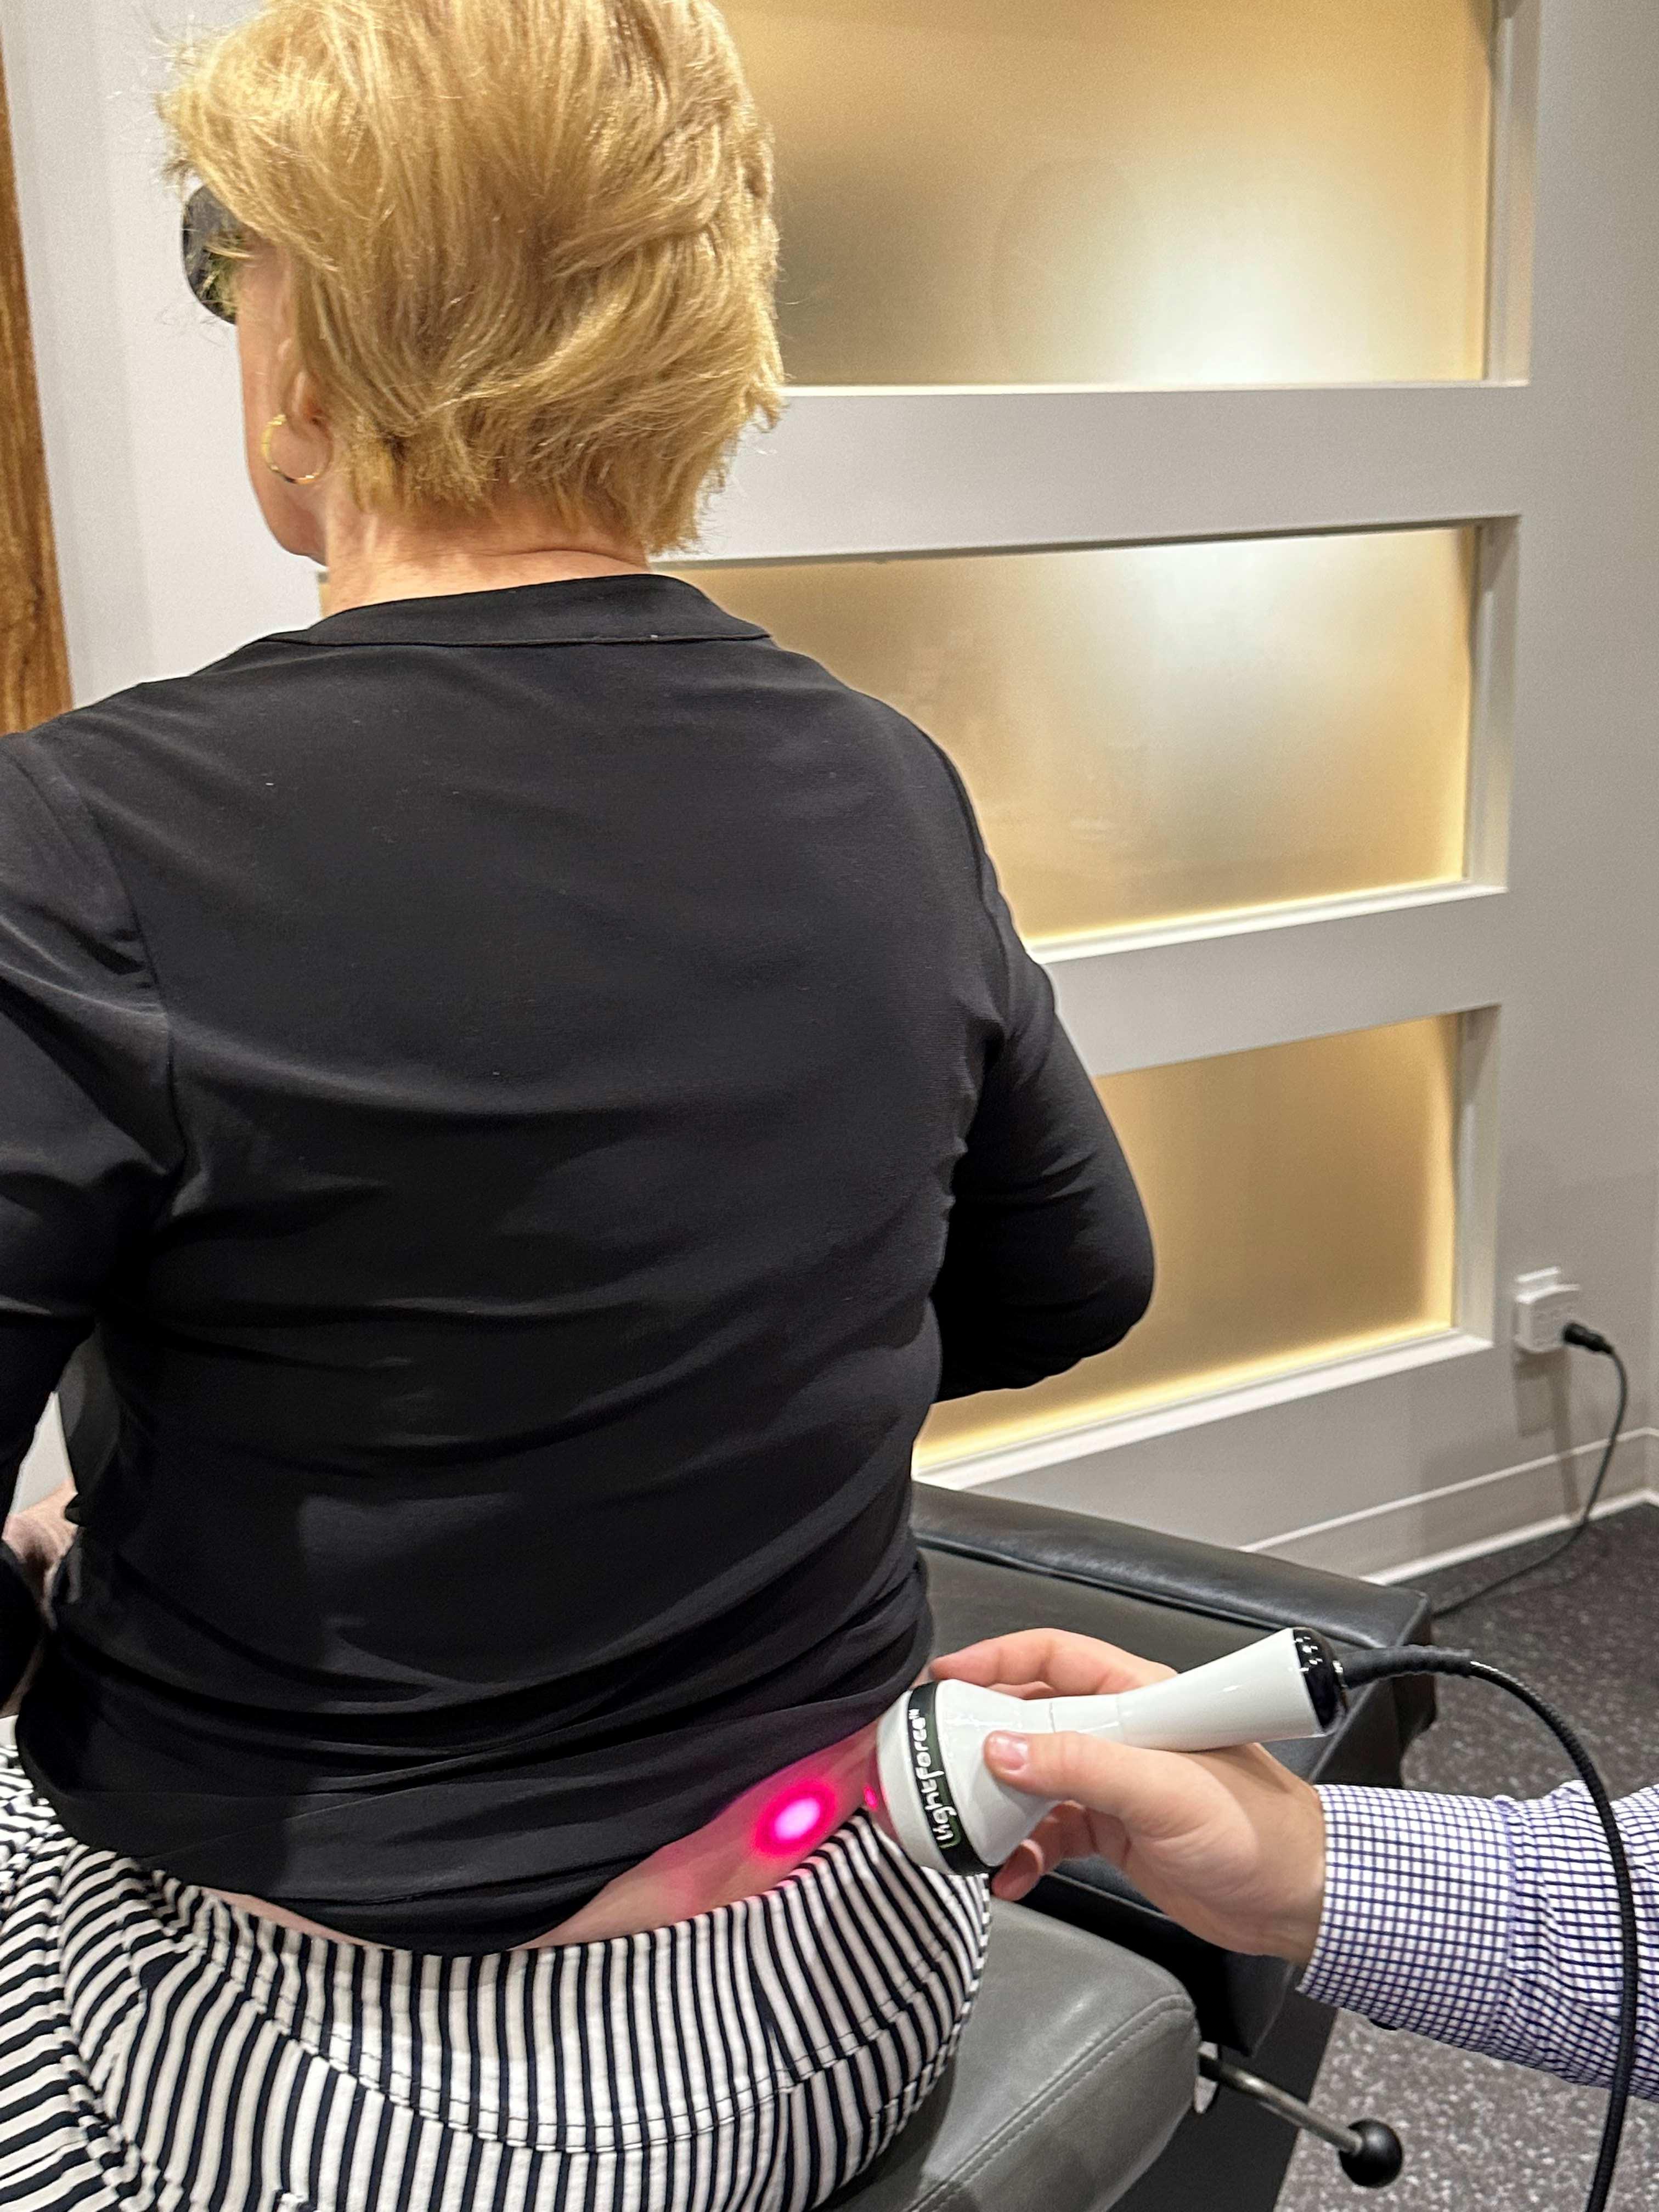 Application de laser dans le bas du dos d'un patient par un docteur dans le cadre d'un traitement dans une clinique.